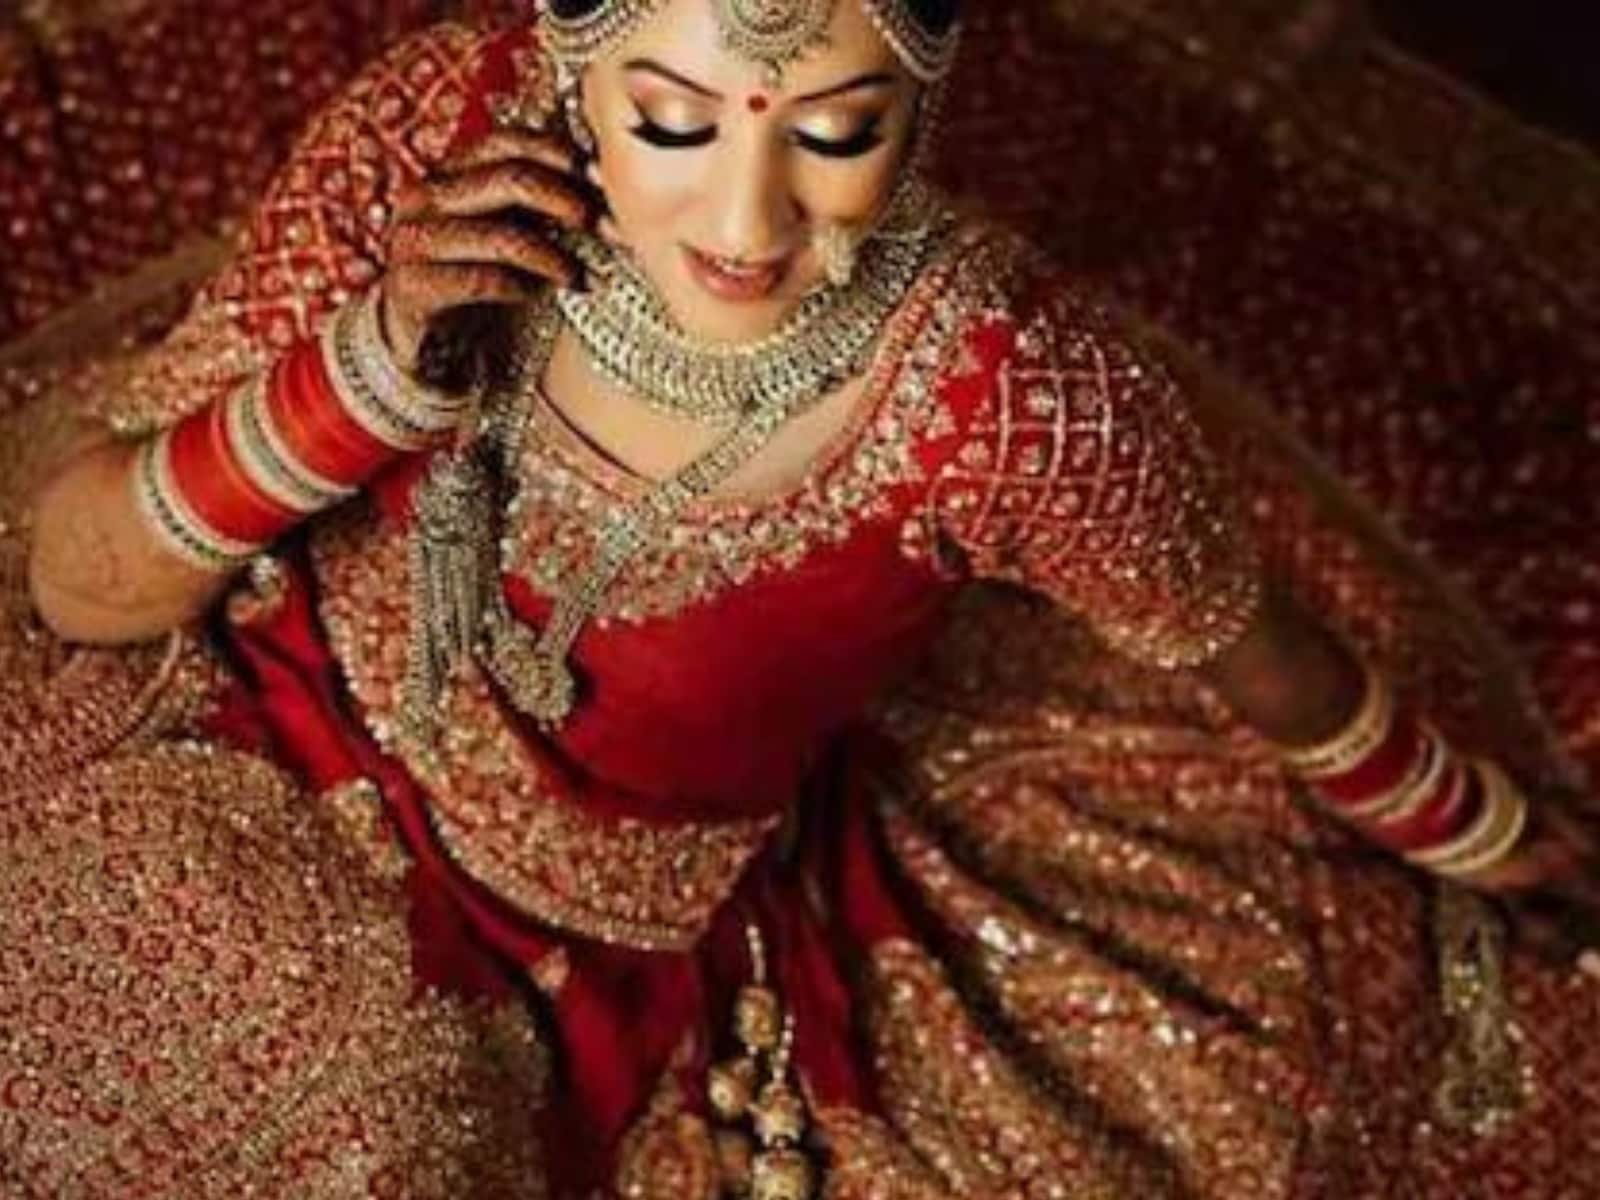 10 Latest News About bridal lehenga | GirlStyle India